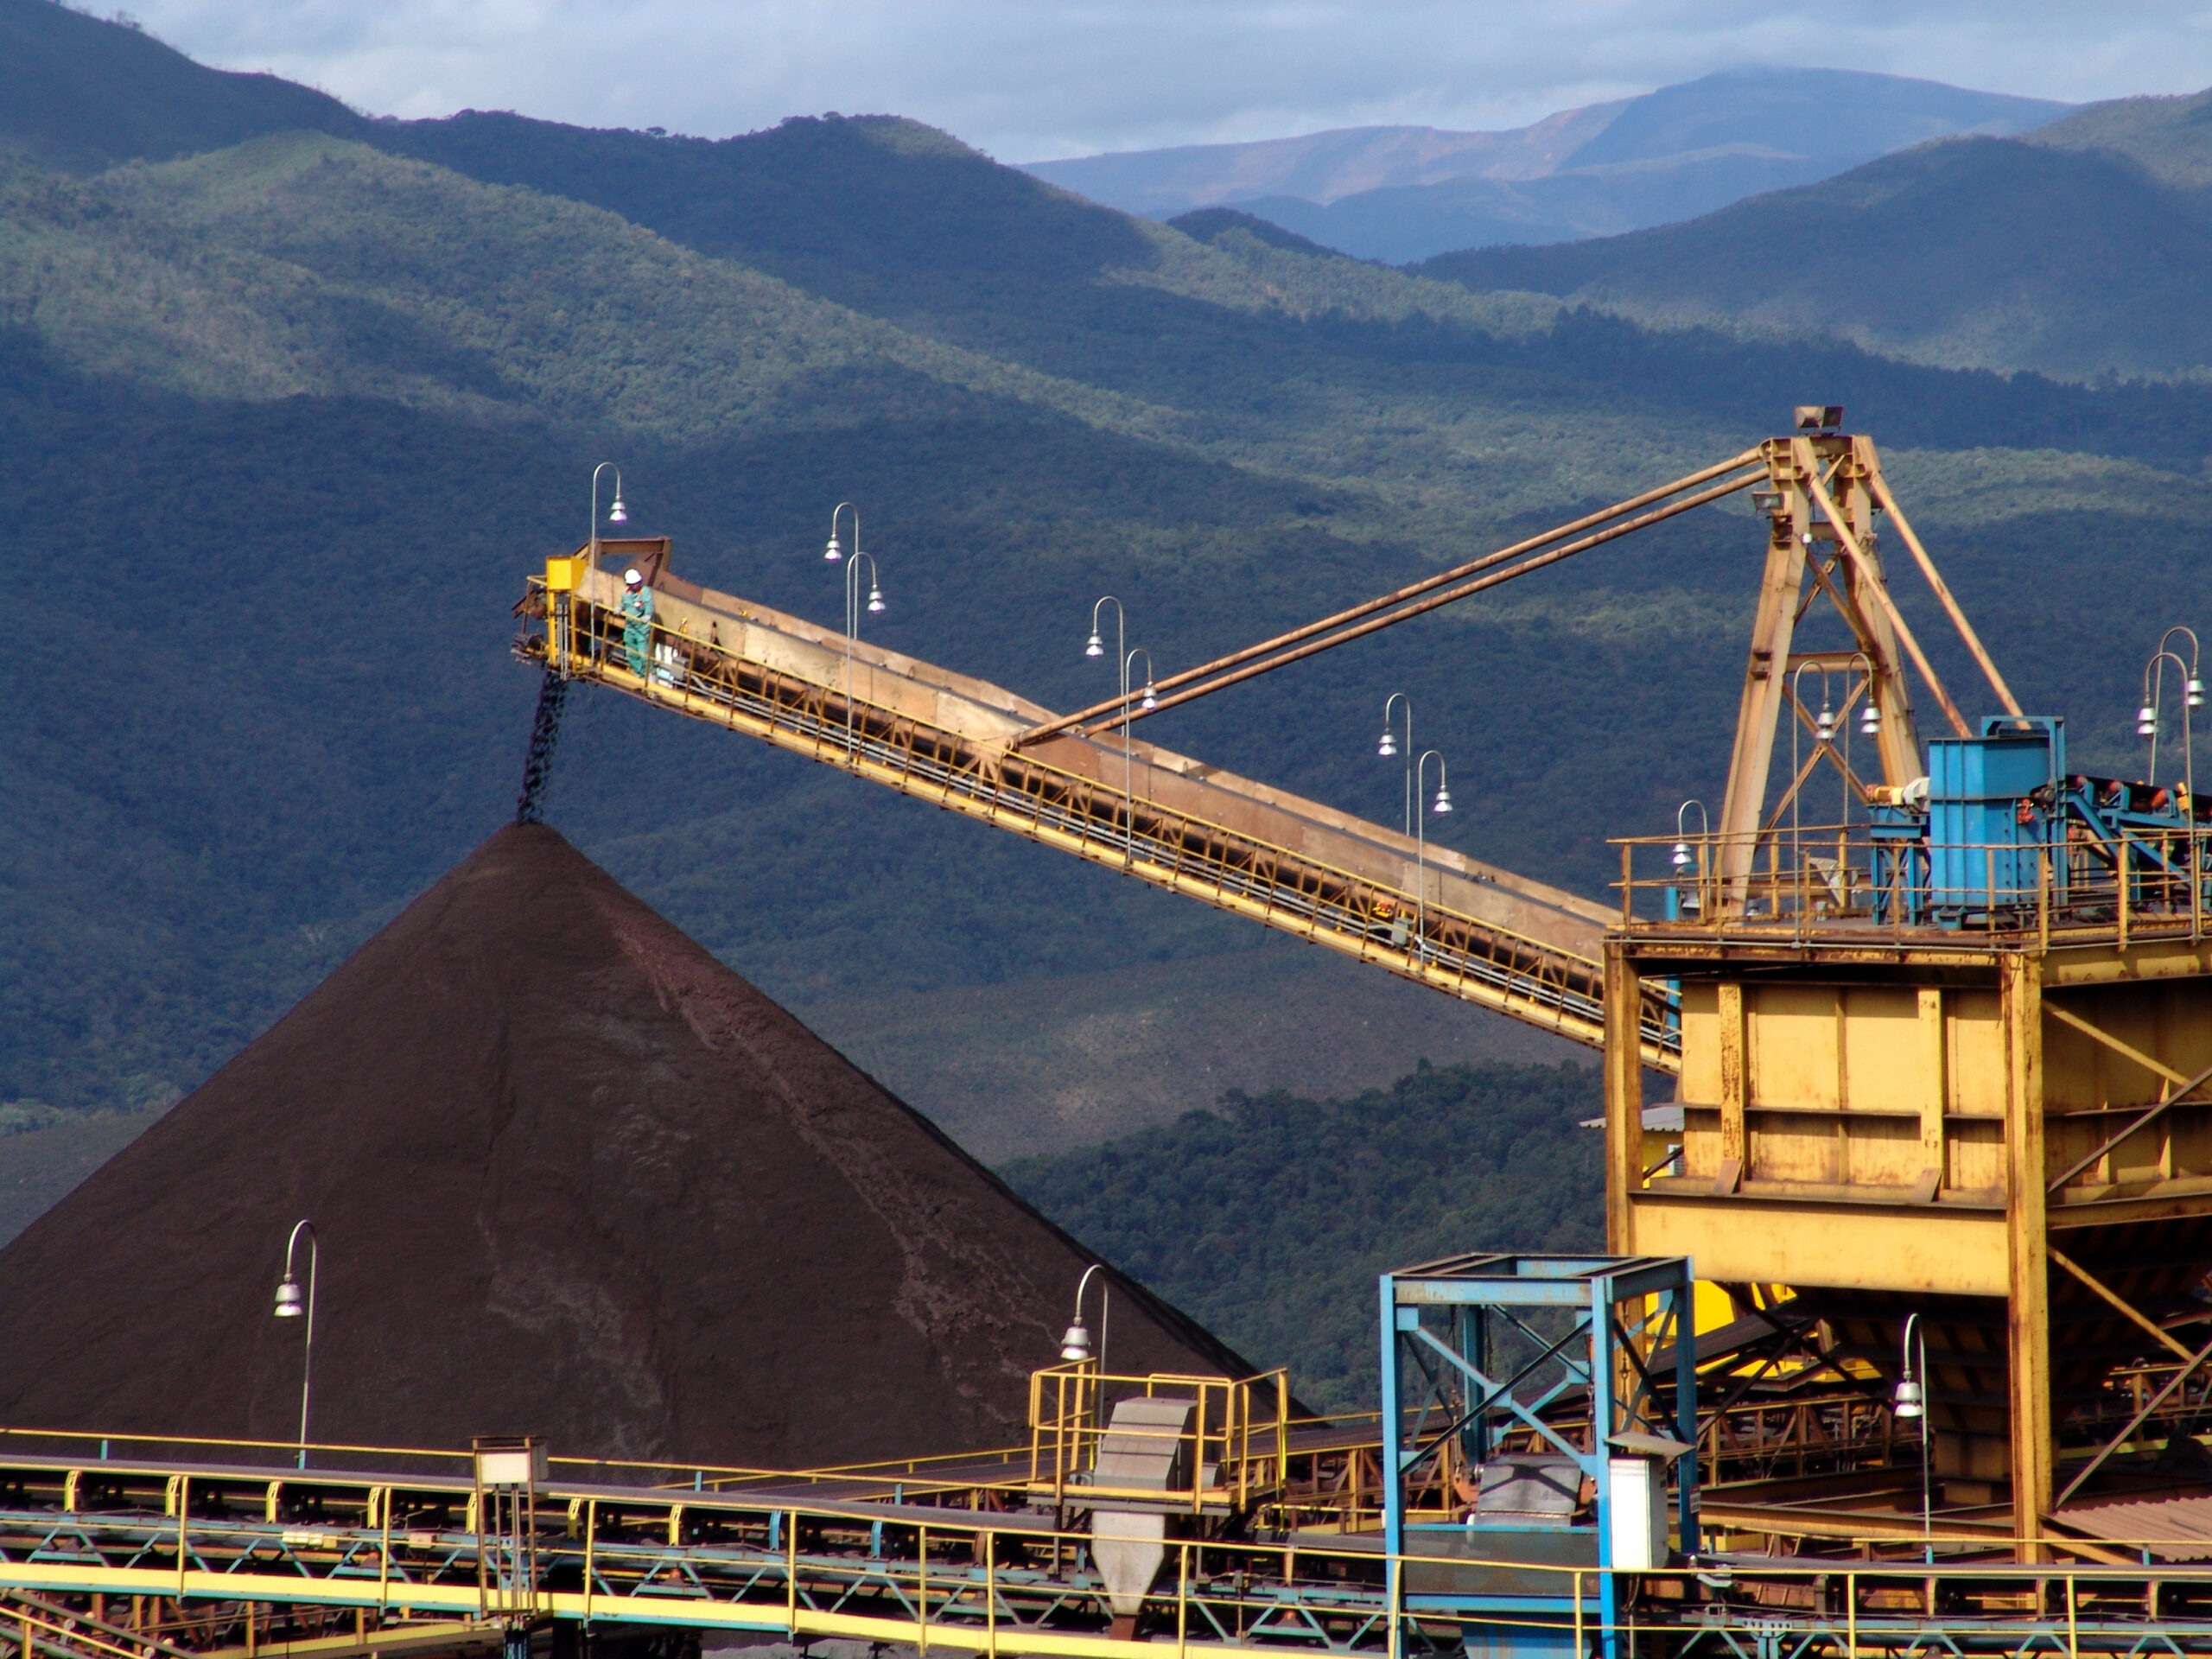 Estudo Do Impacto Da Mineração CSG Em Fazendas Australianas